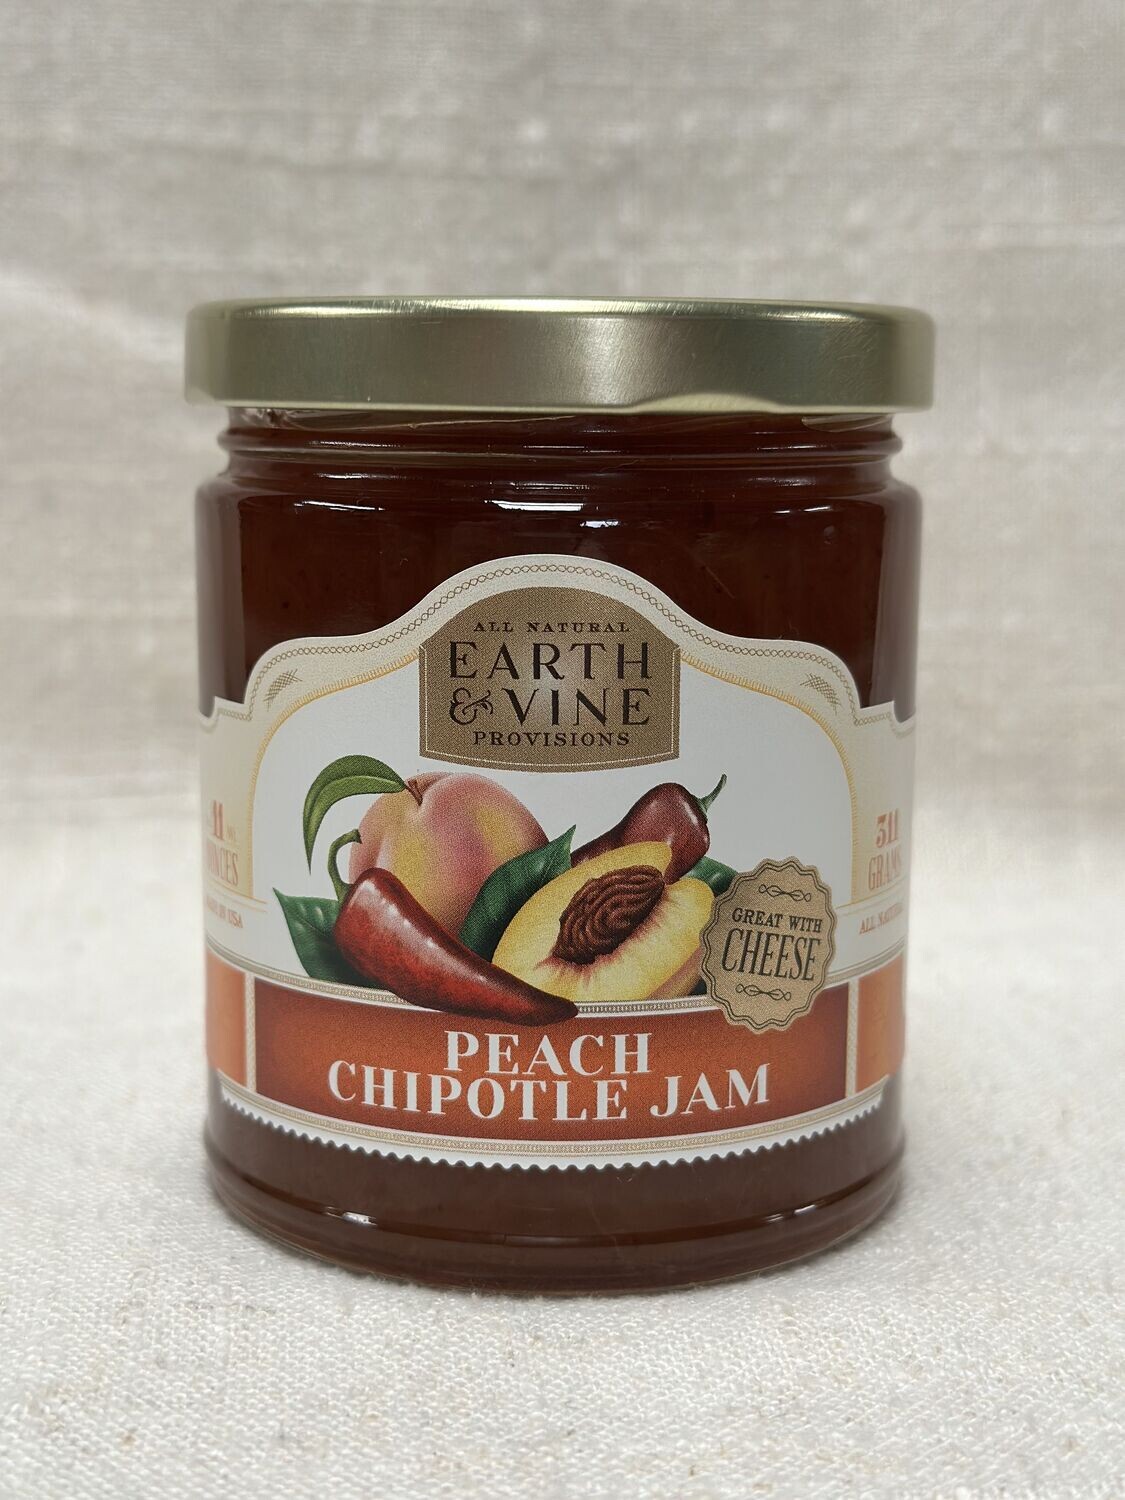 Peach Chipotle Jam